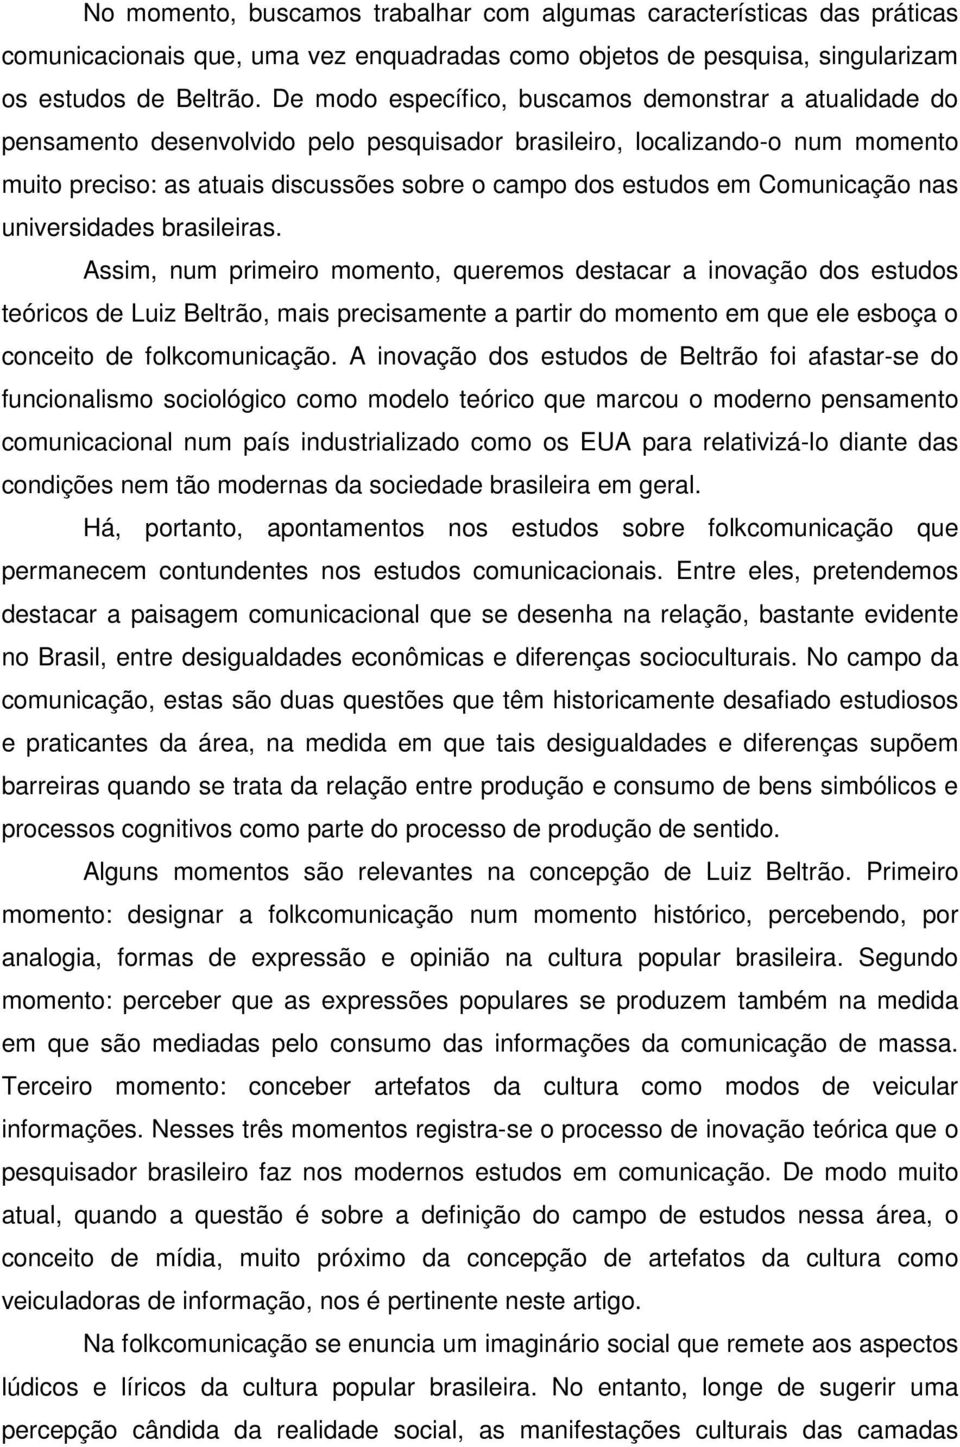 Comunicação nas universidades brasileiras.